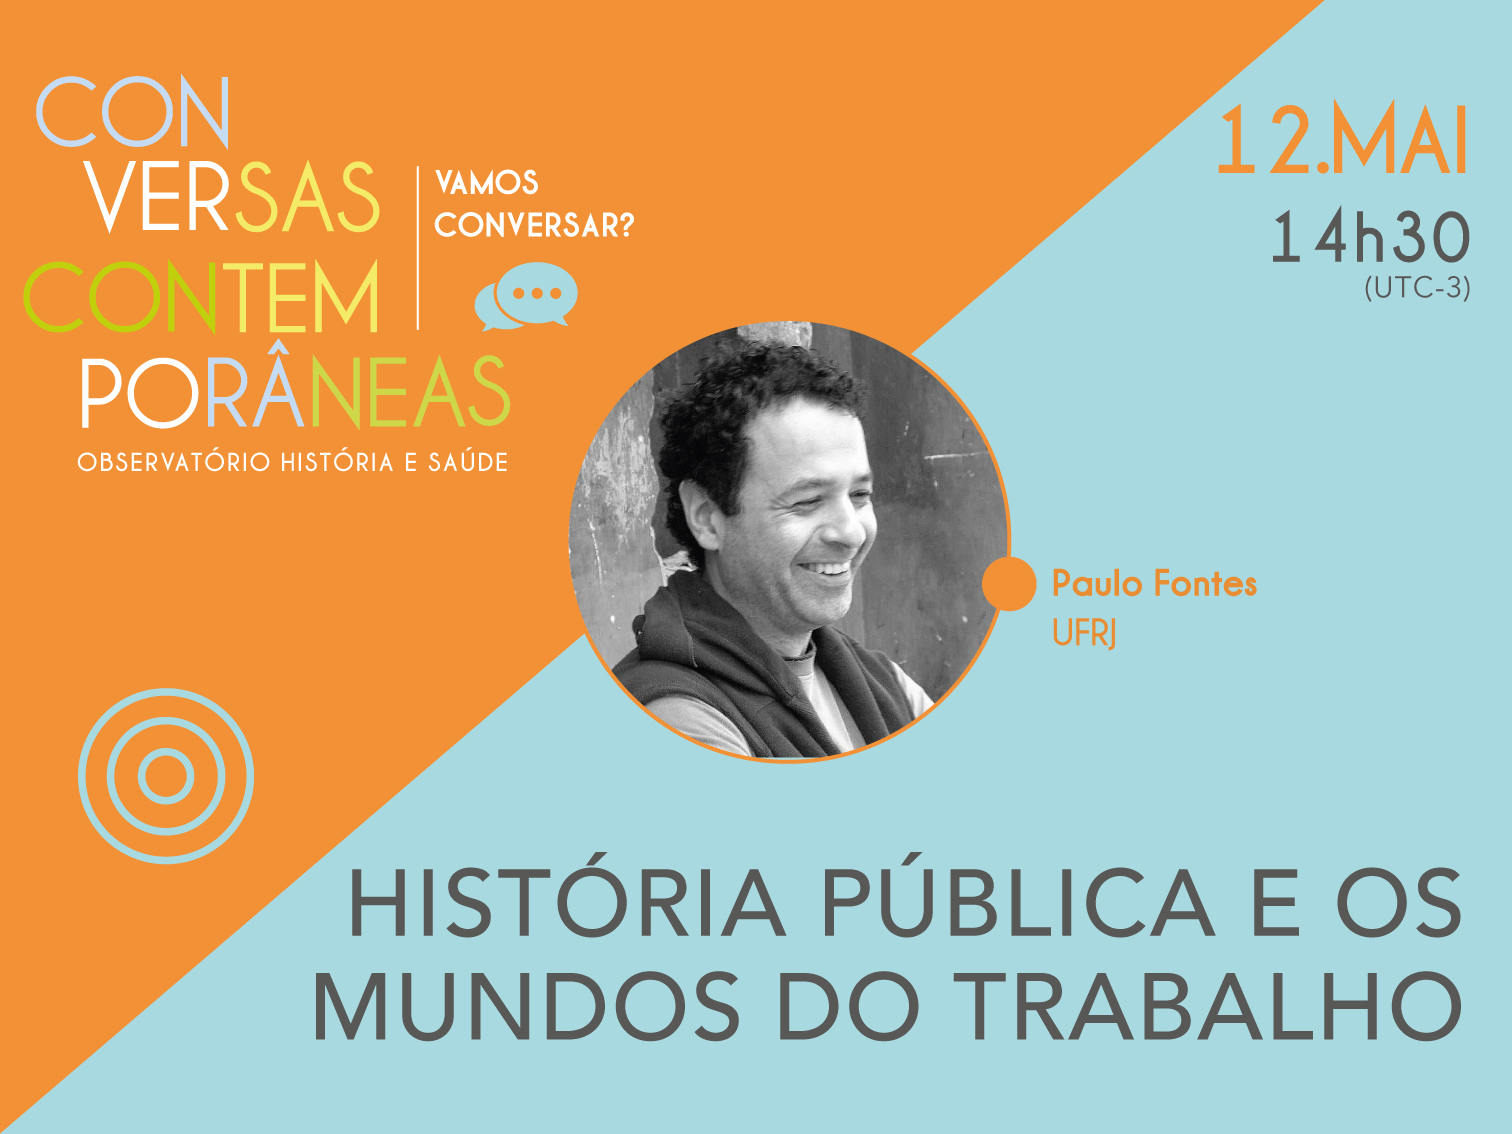 Conversas Contemporâneas Online com Paulo Fontes em 12 de maio, às 14h30.